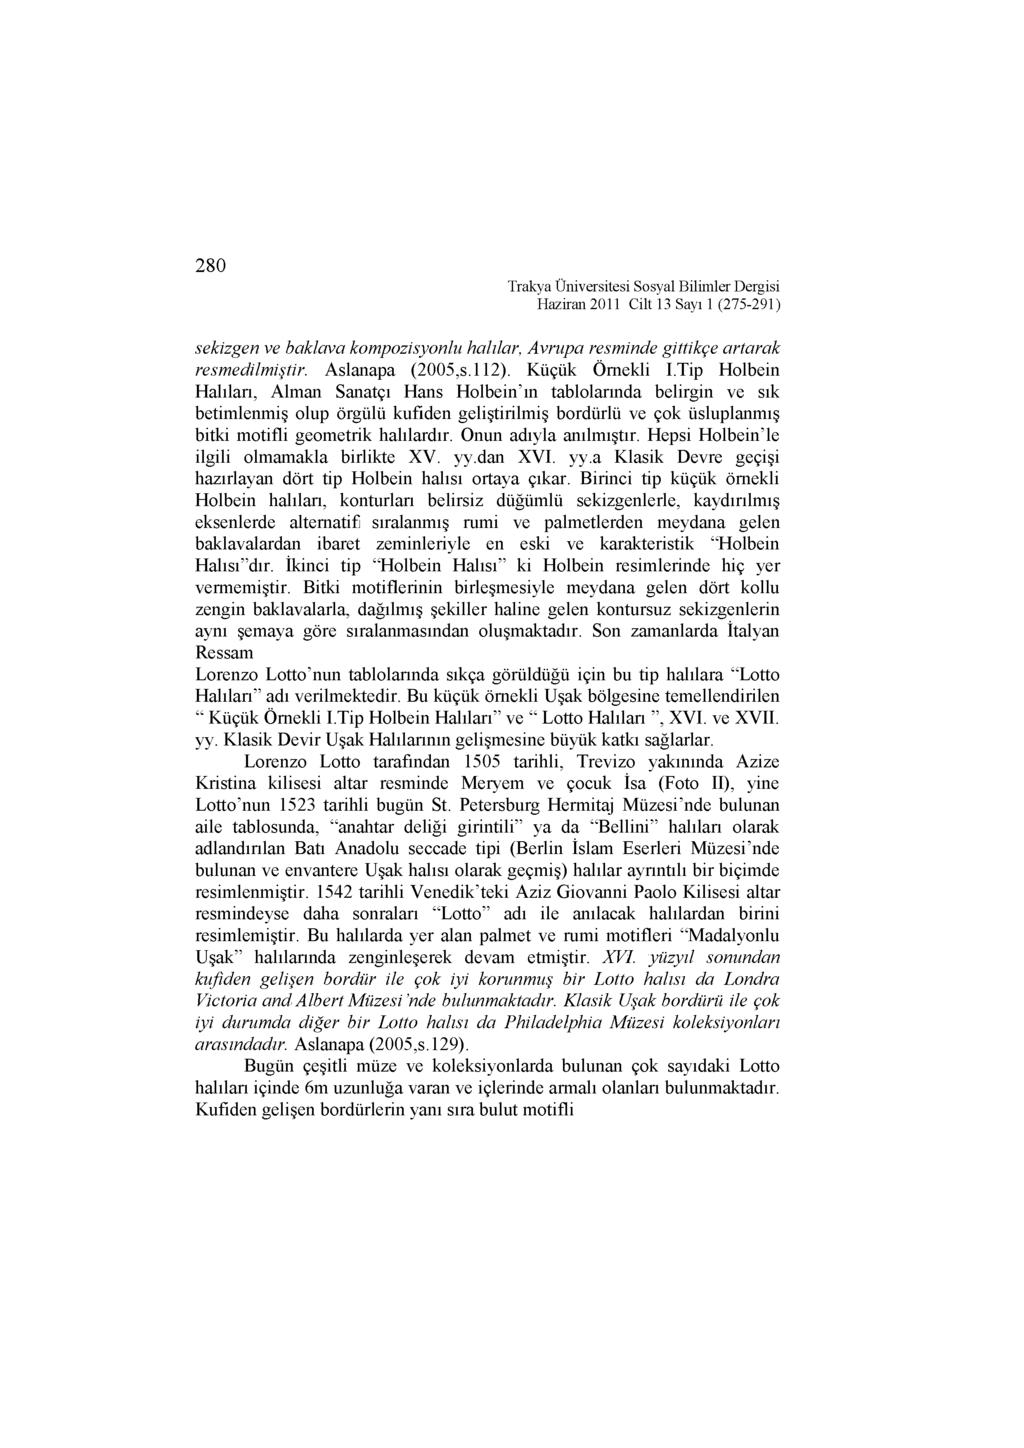 280 Trakya Üniversitesi Sosyal Bilimler Dergisi sekizgen ve baklava kompozisyonlu halılar, Avrupa resminde gittikçe artarak resmedilmiştir. Aslanapa (2005,s.112). Küçük Örnekli I.